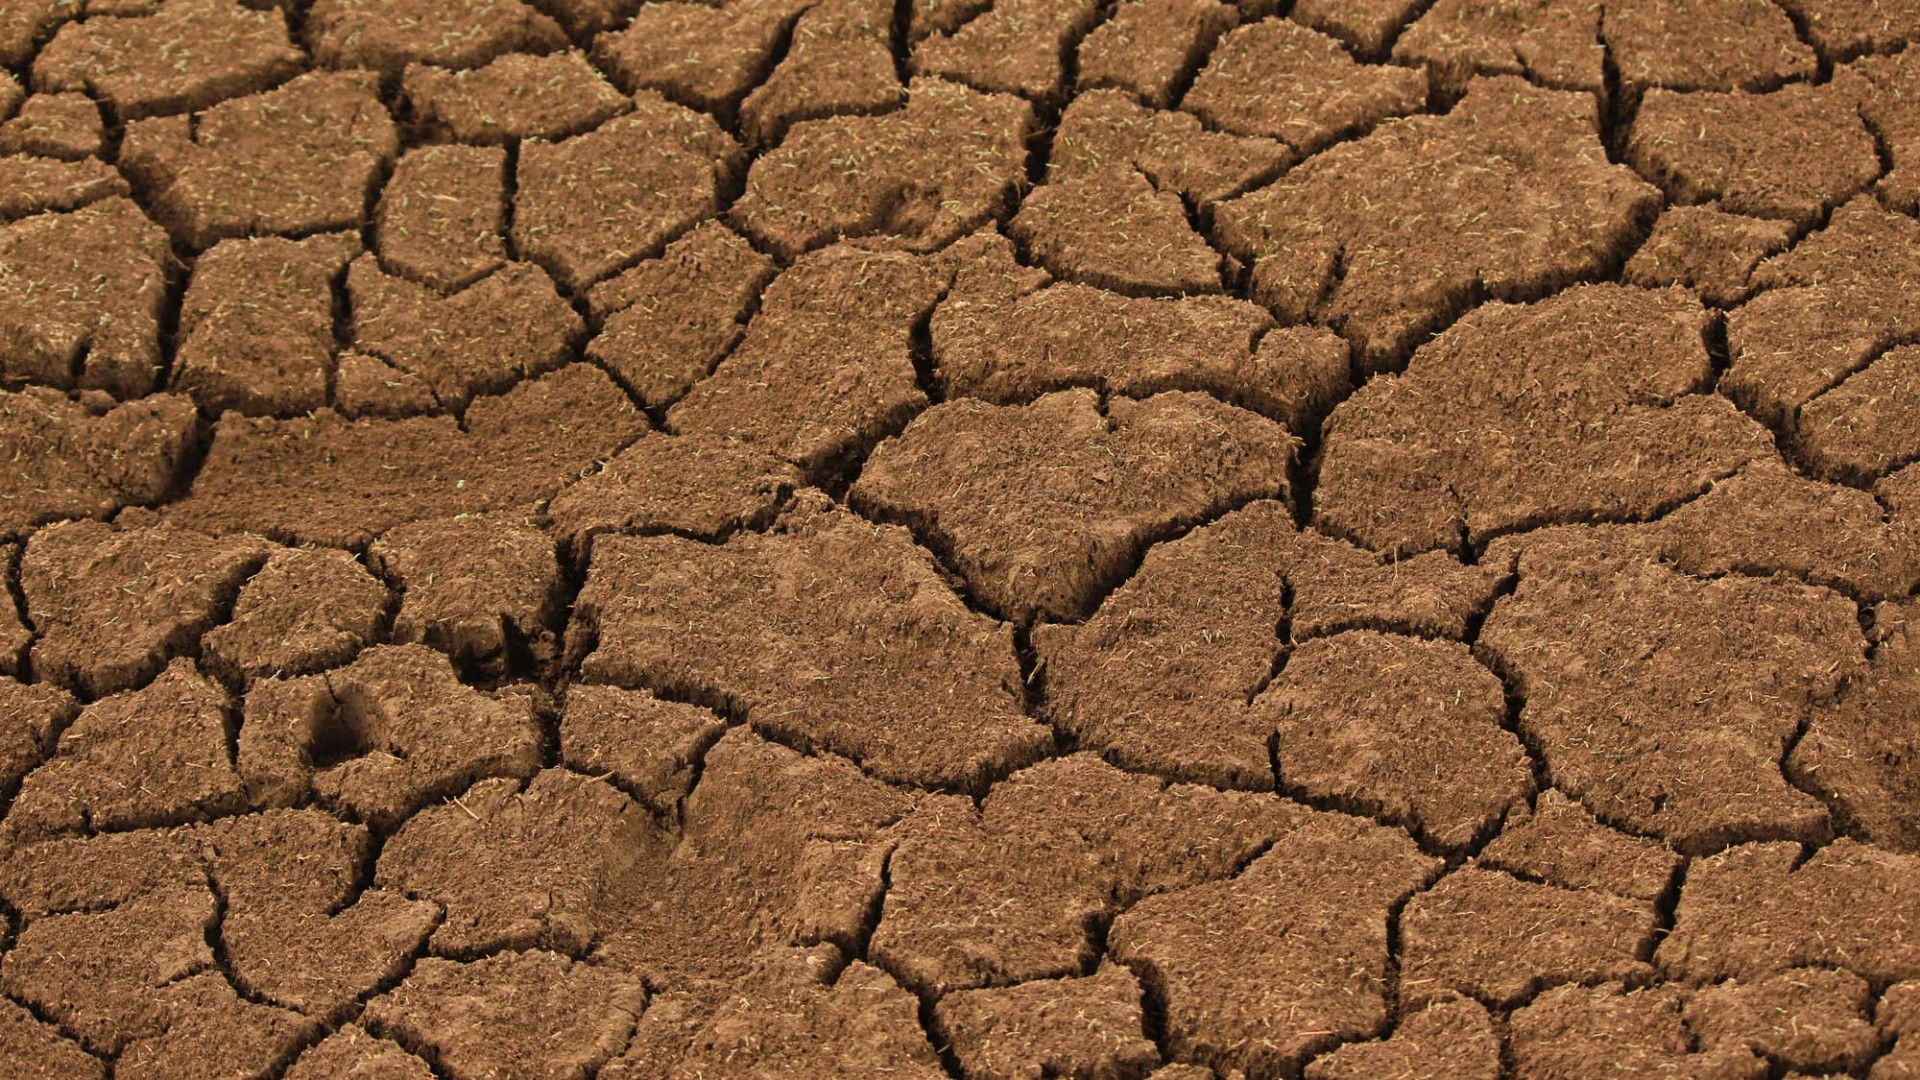 dry, cracked soil